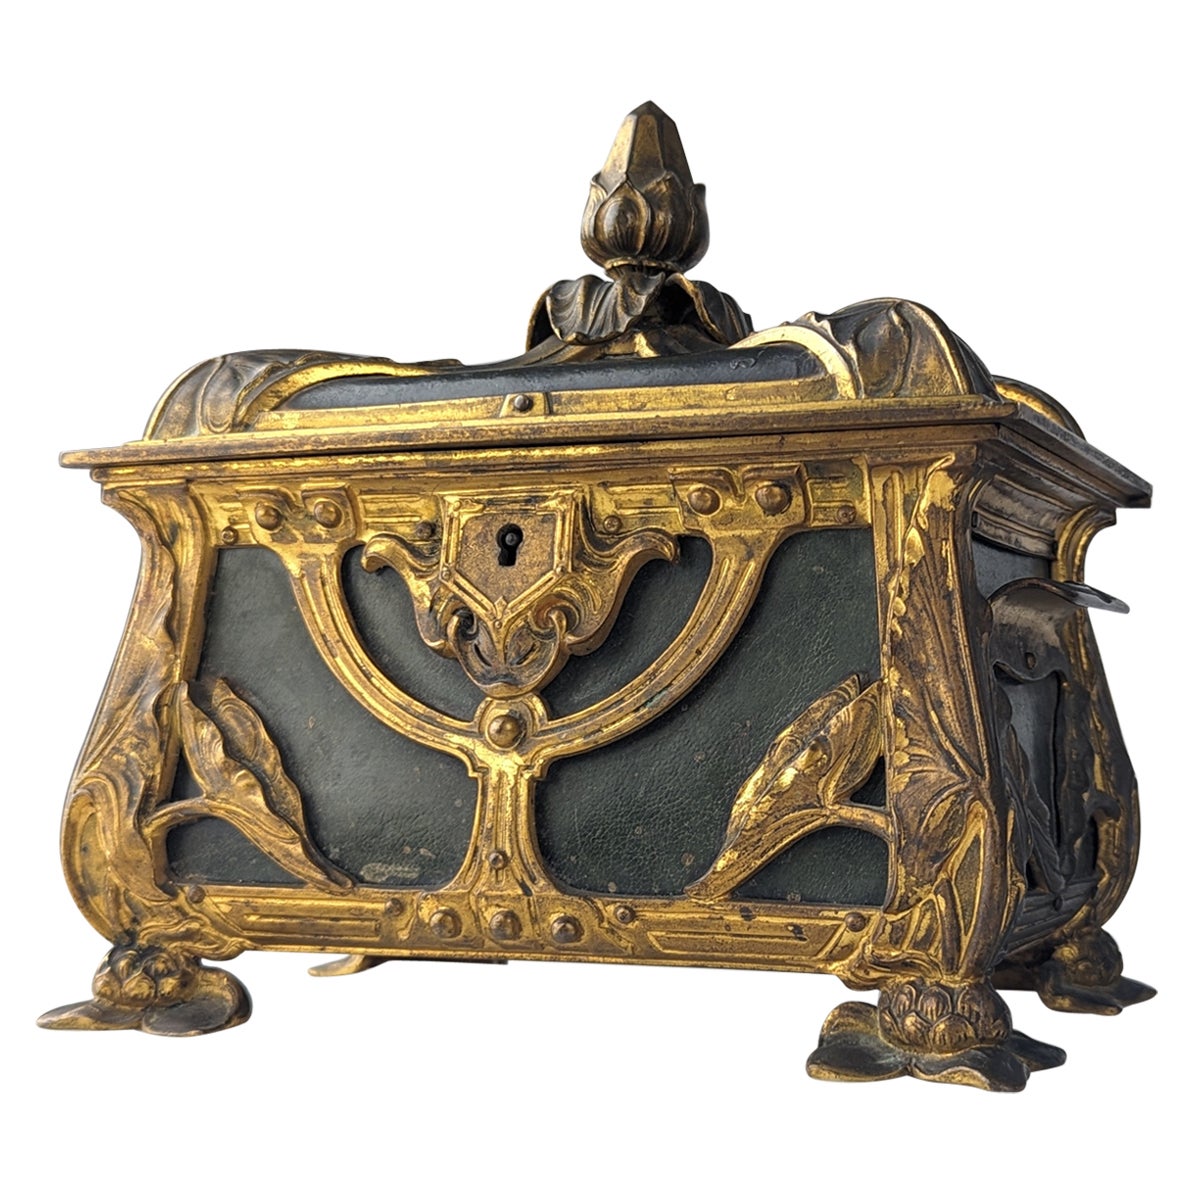 French Art Nouveau bombé jewelry box